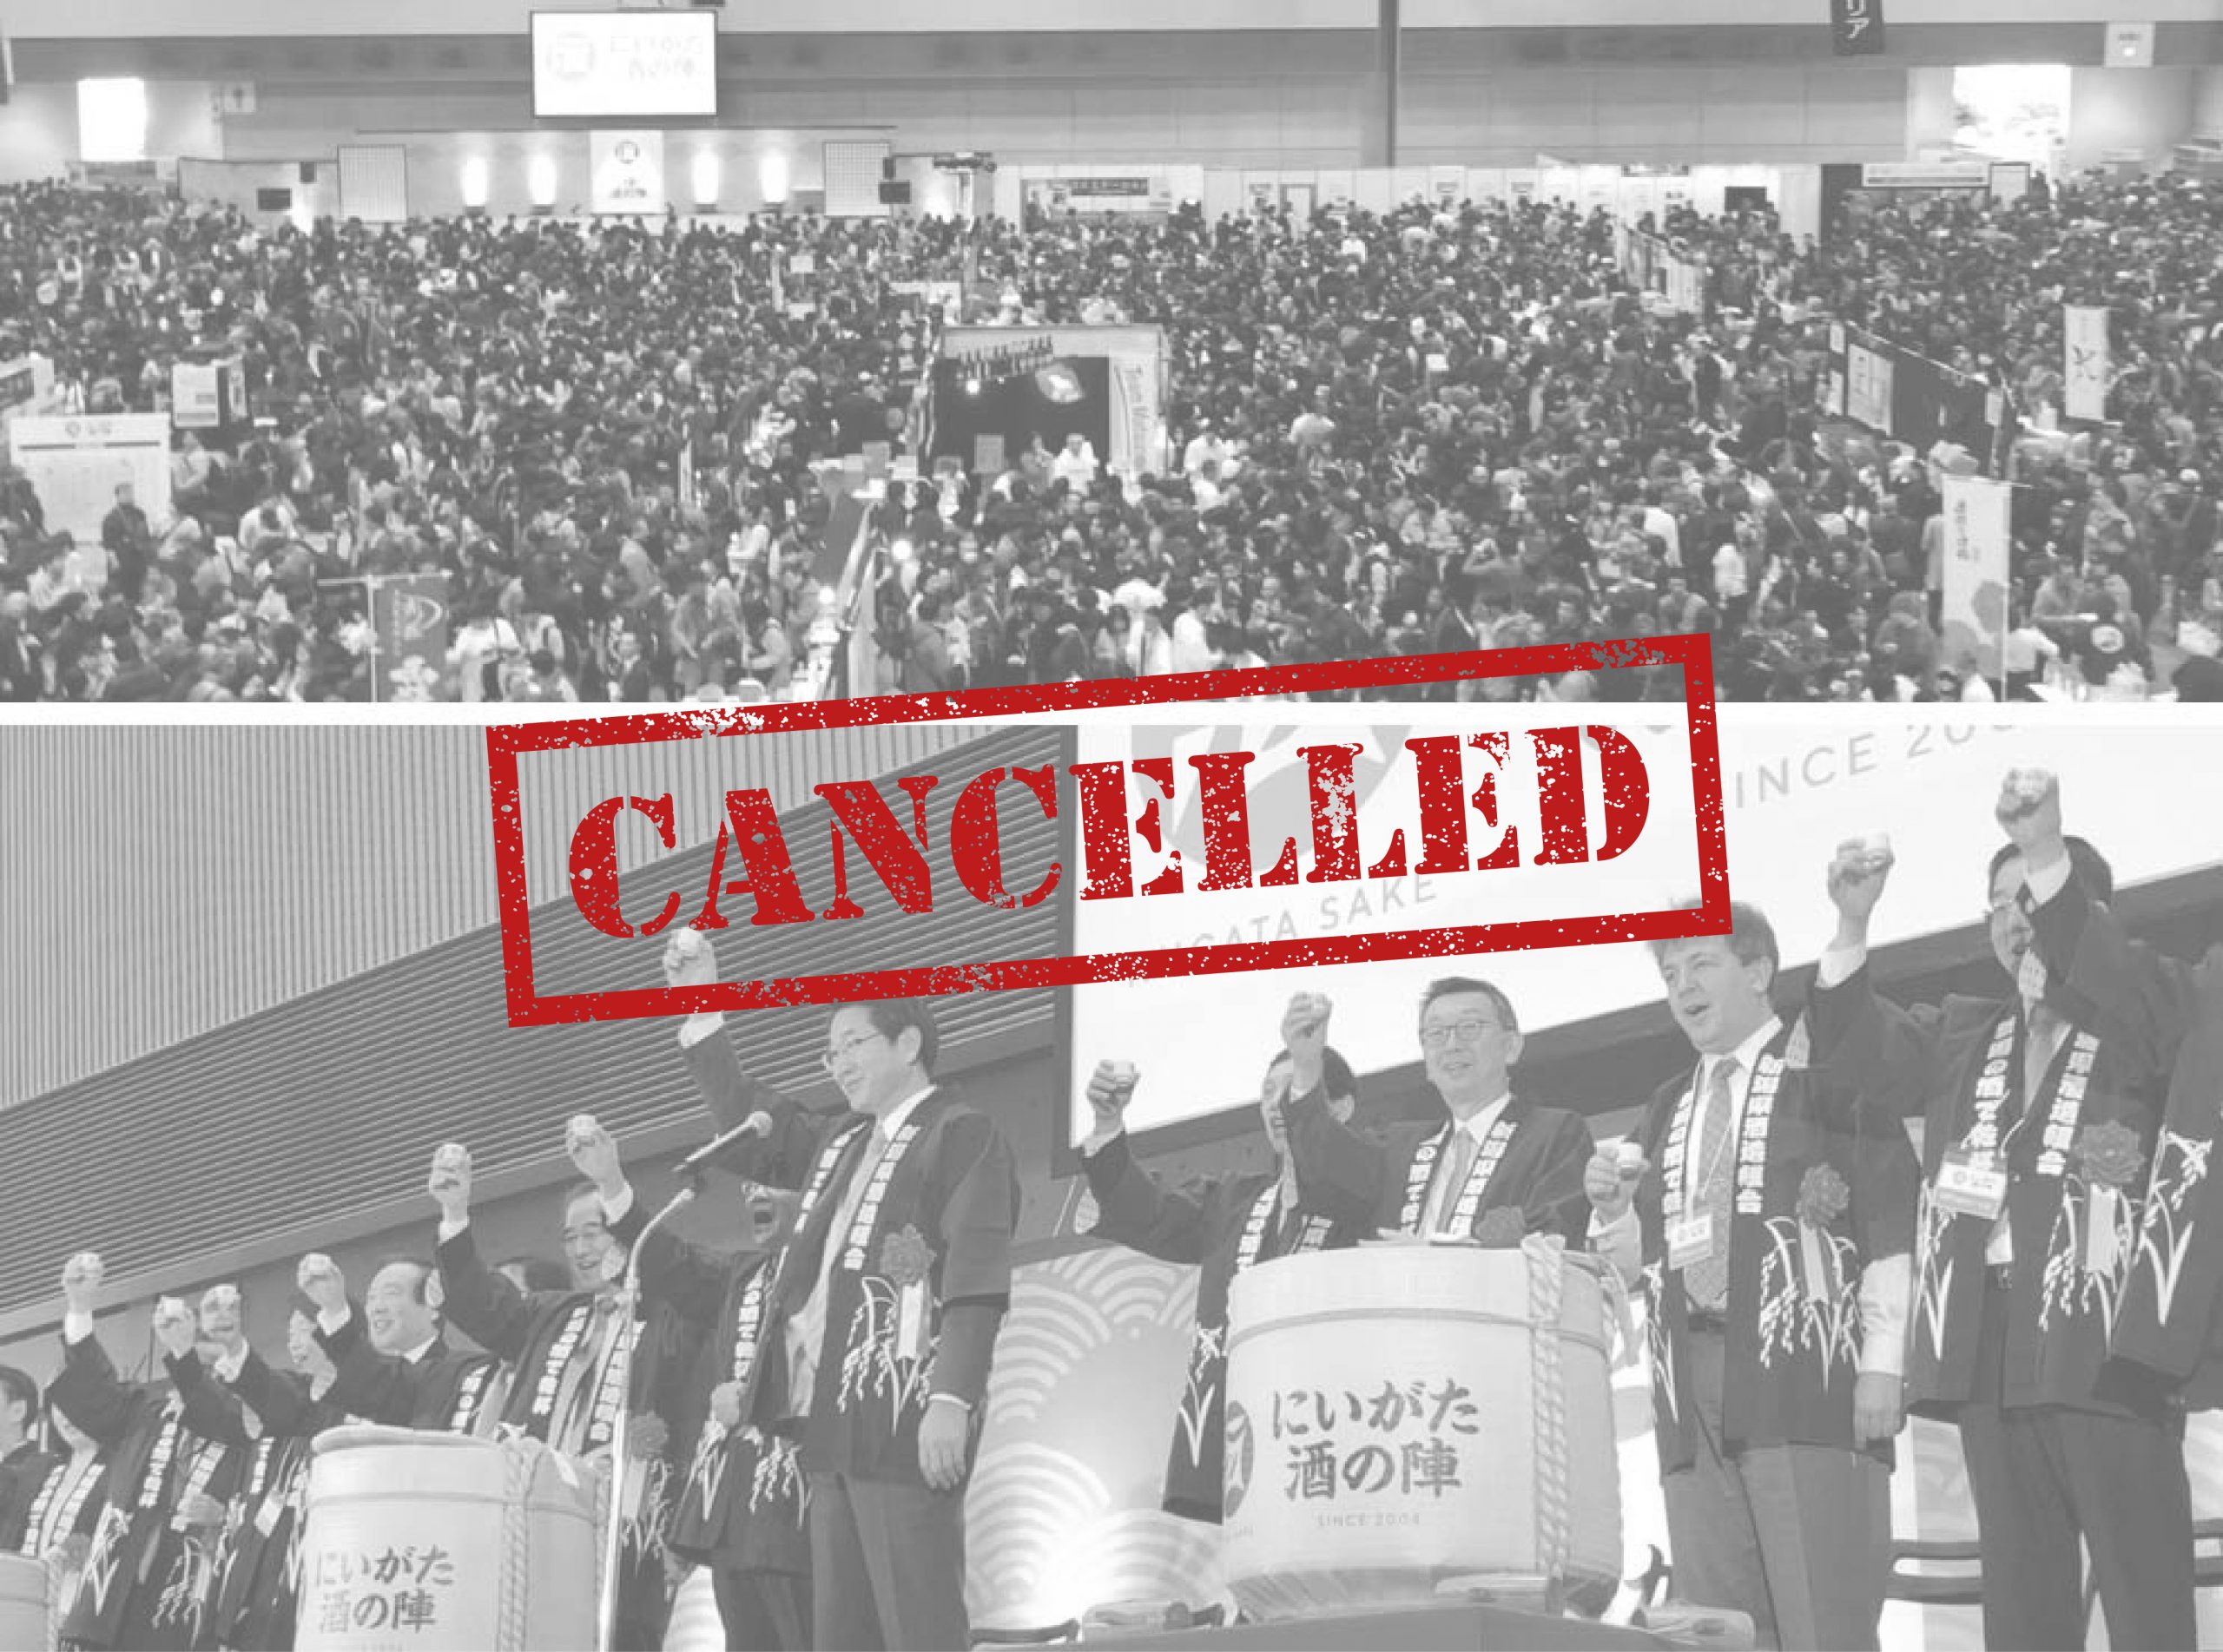 Sakenojin Sake Show 2020 - Cancelled